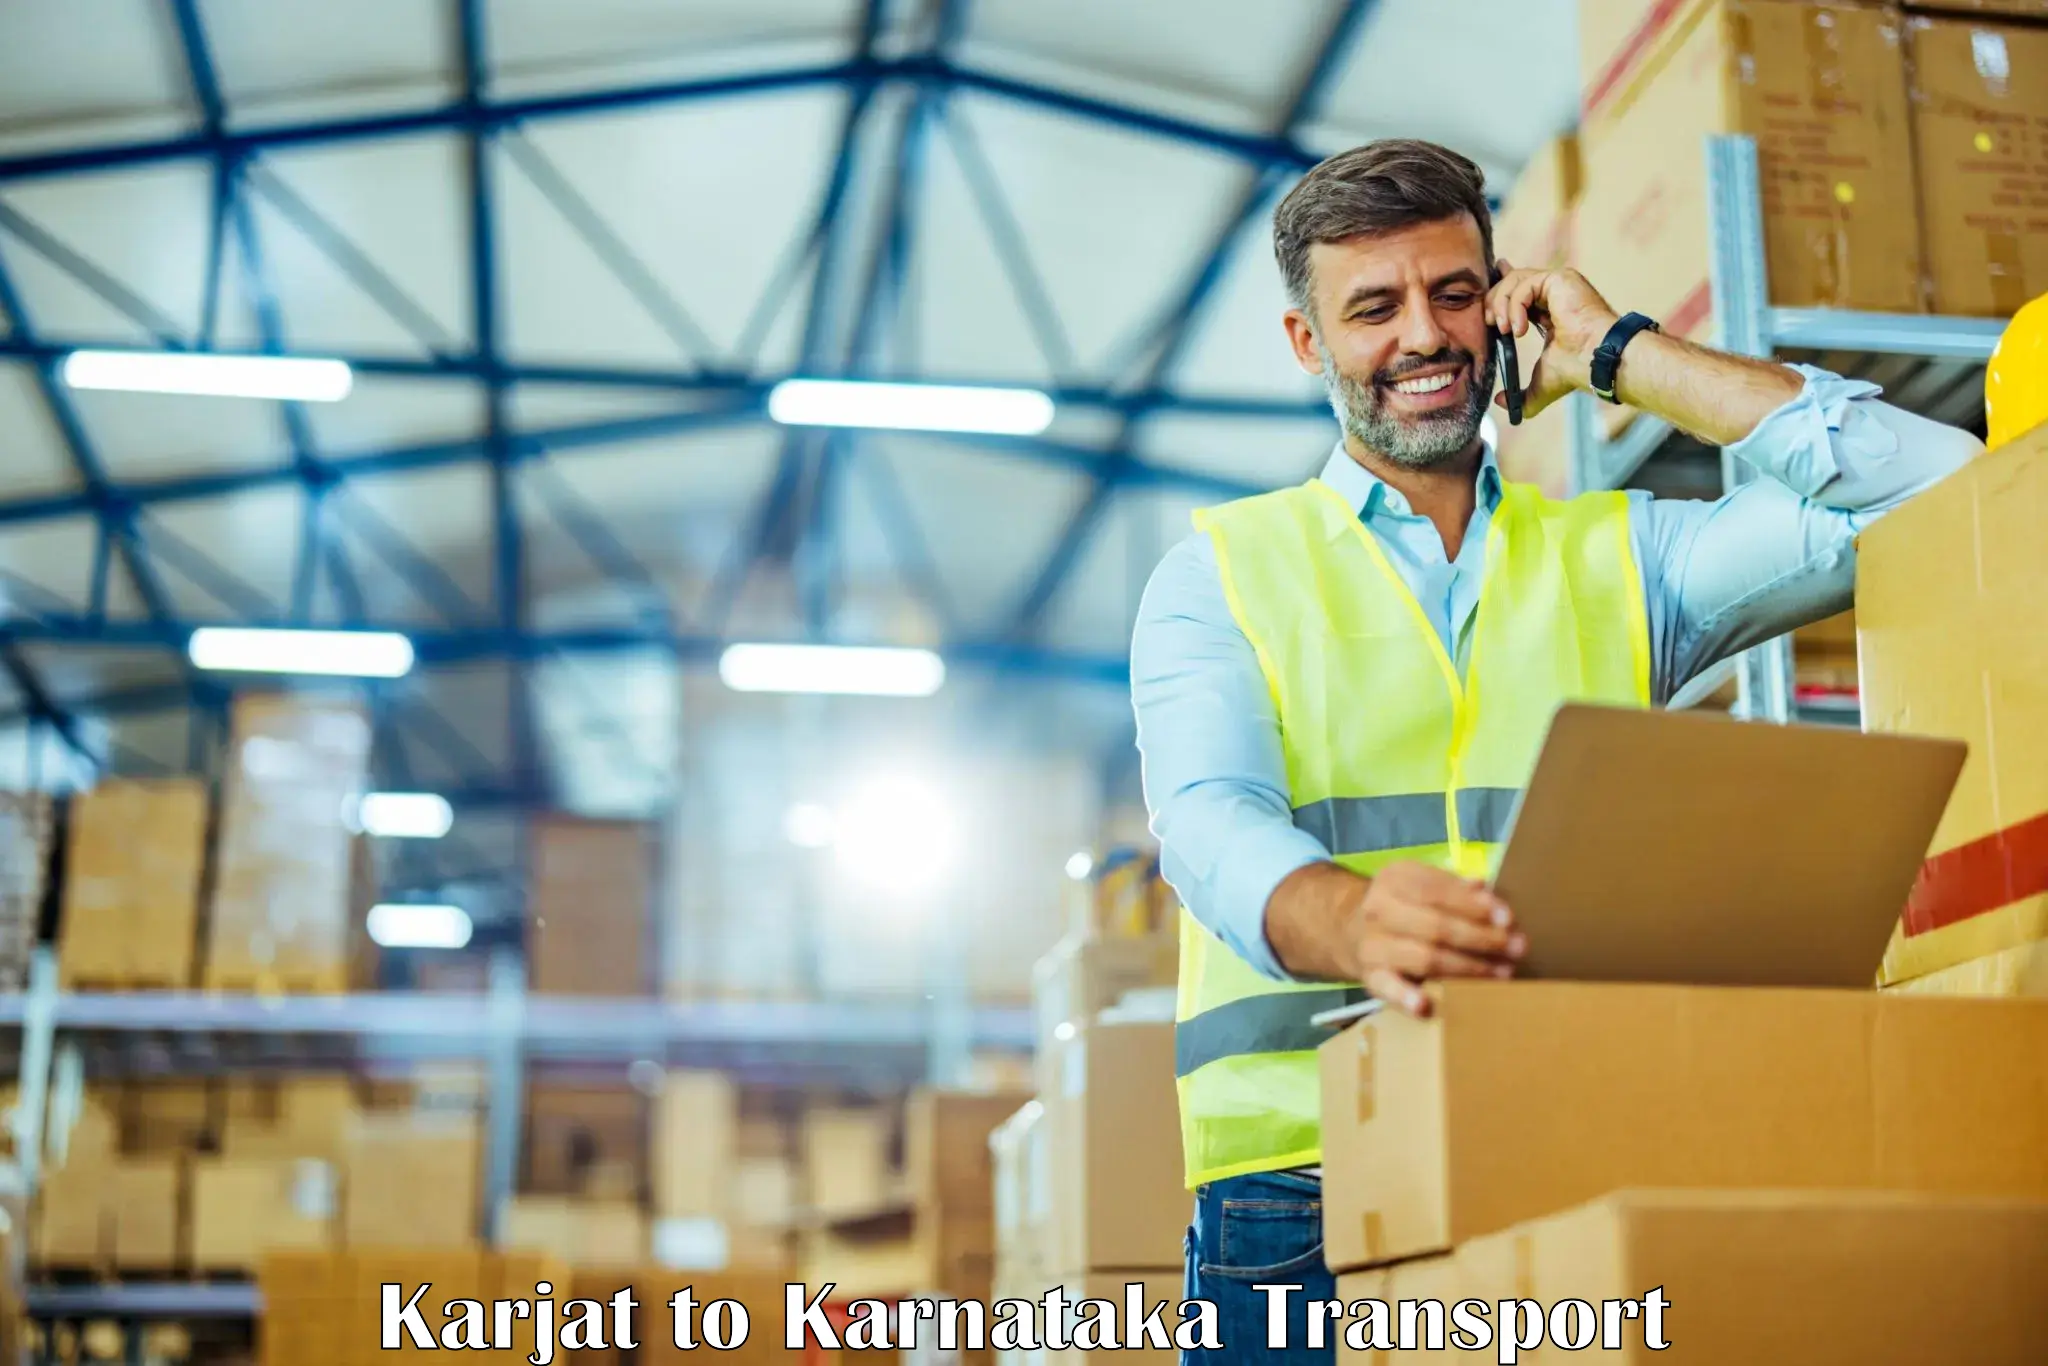 Express transport services Karjat to Karnataka